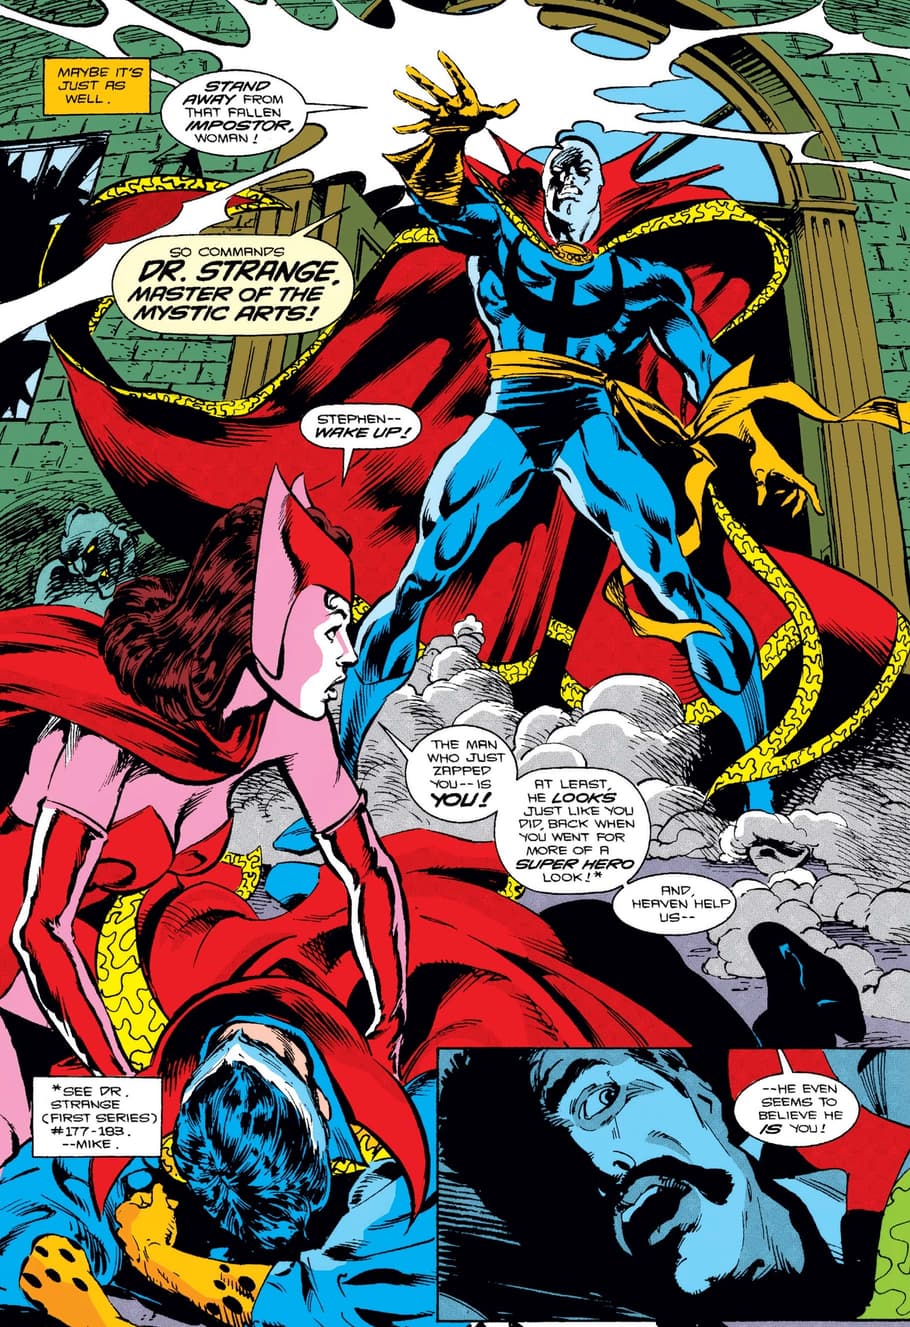 Doctor Strange versus the Necromancer in DOCTOR STRANGE, SORCERER SUPREME (1988) #46.